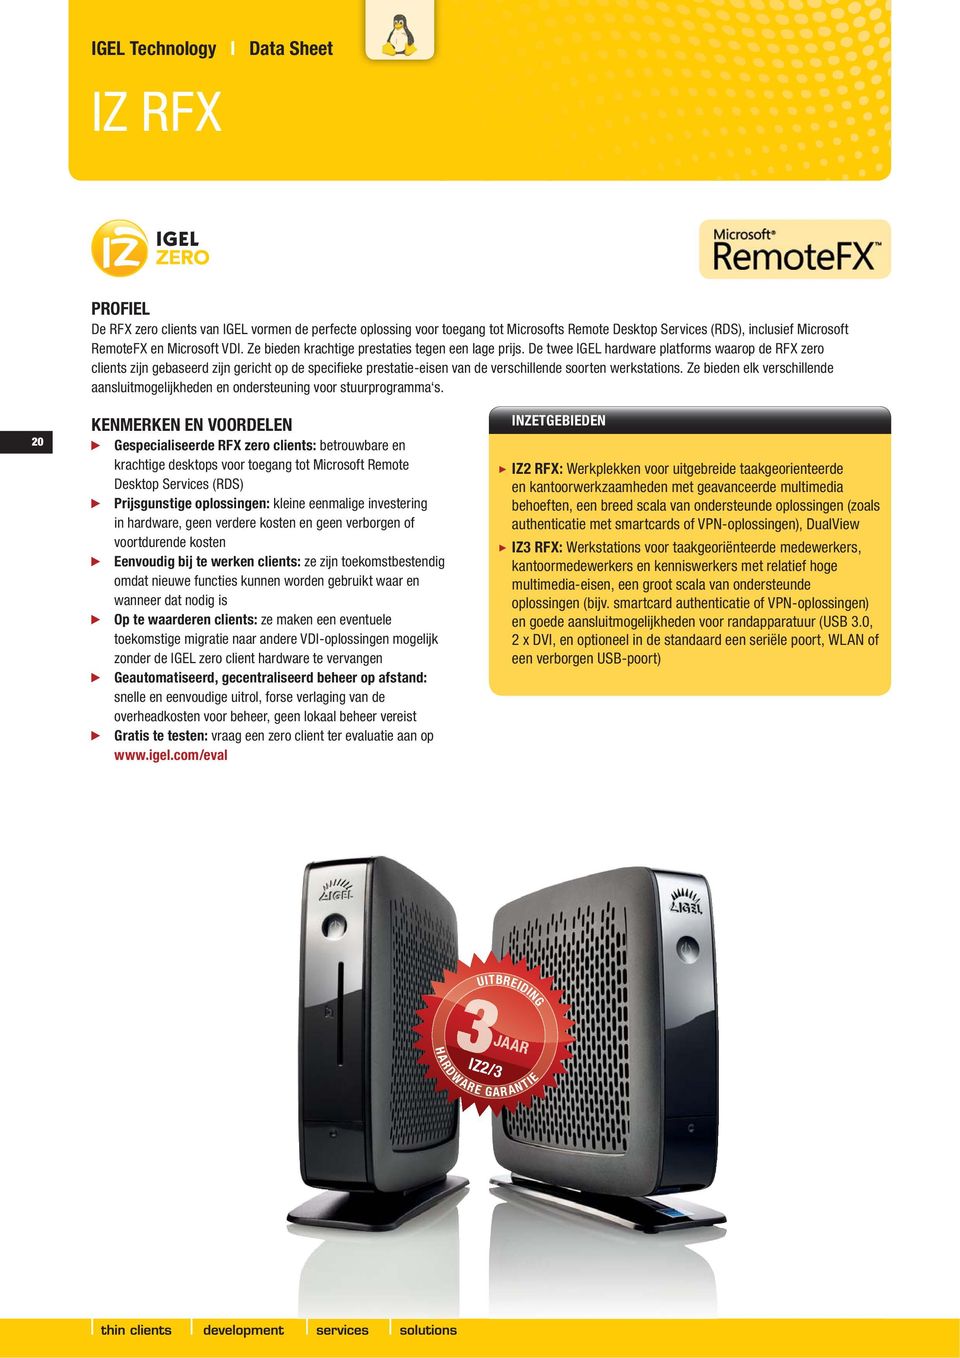 De twee IGEL hardware platforms waarop de RFX zero clients zijn gebaseerd zijn gericht op de specifieke prestatie-eisen van de verschillende soorten werkstations.